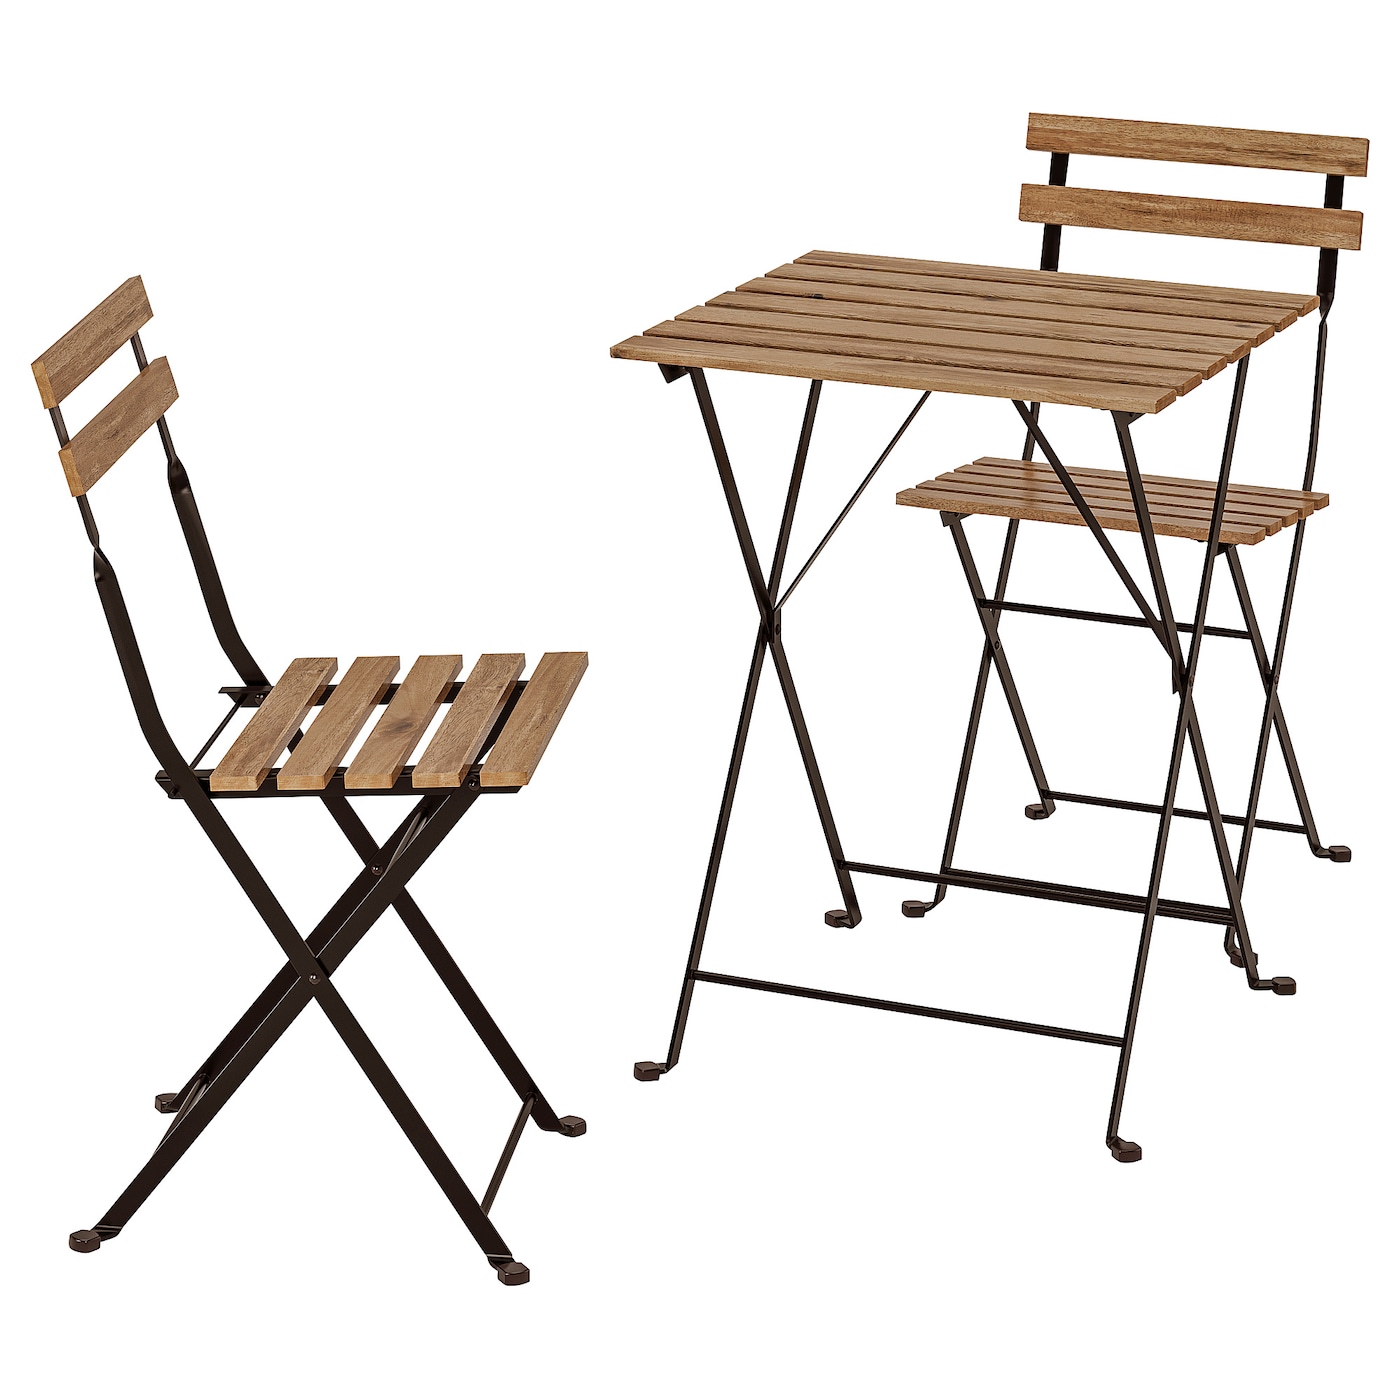 Складной комплект стула и стола - TÄRNÖ /TАRNО IKEA/ТЭРНО ИКЕА, коричневый